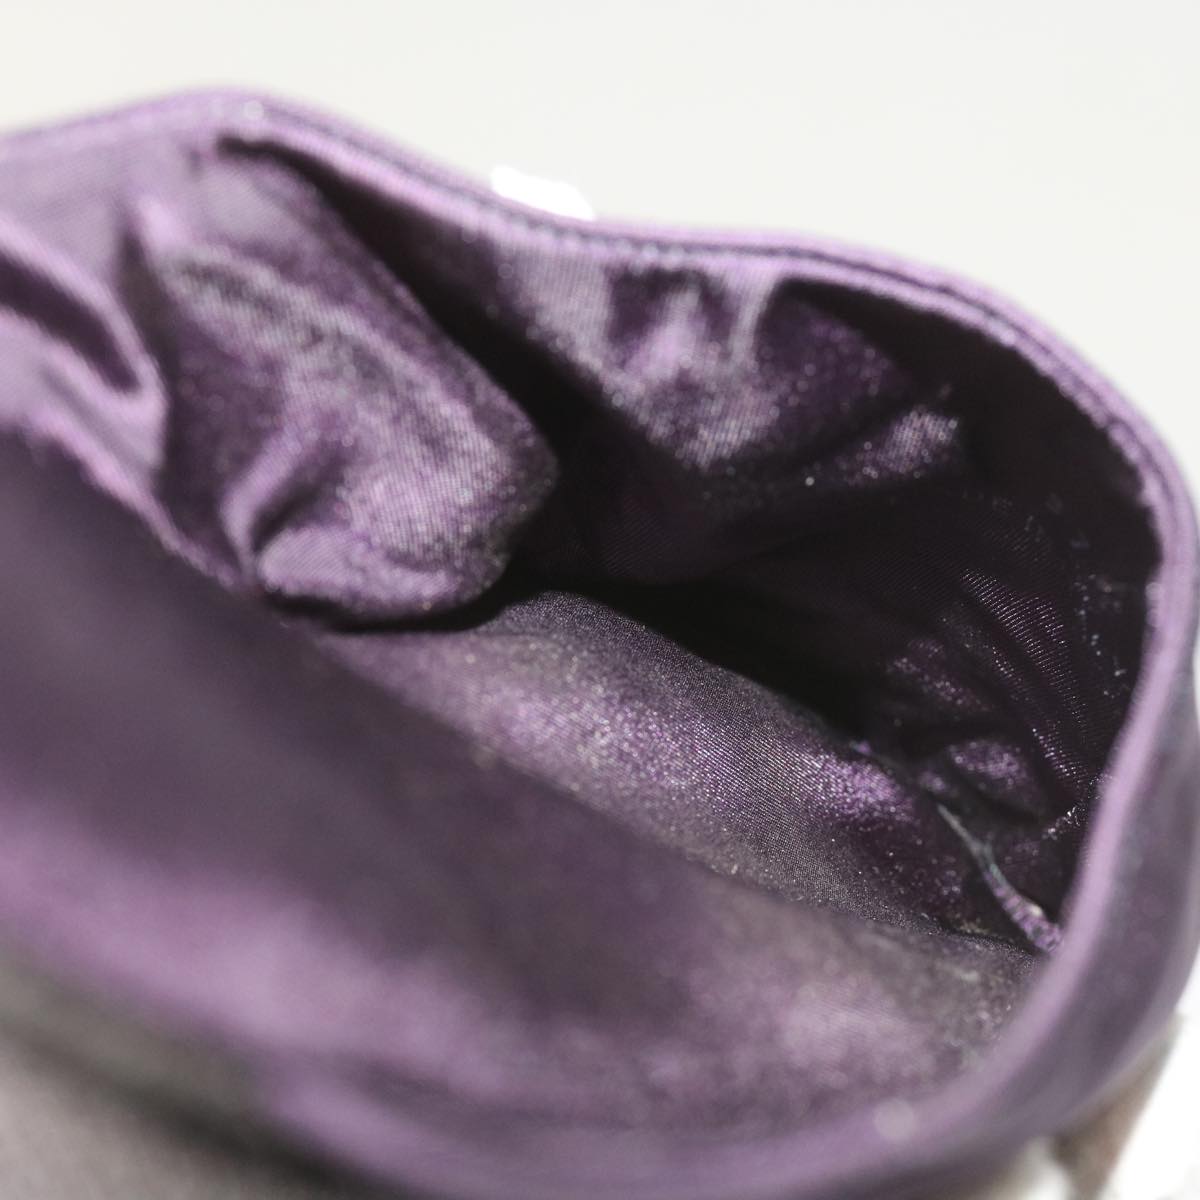 PRADA Slippers Accessory Pouch Nylon Purple Auth 66225